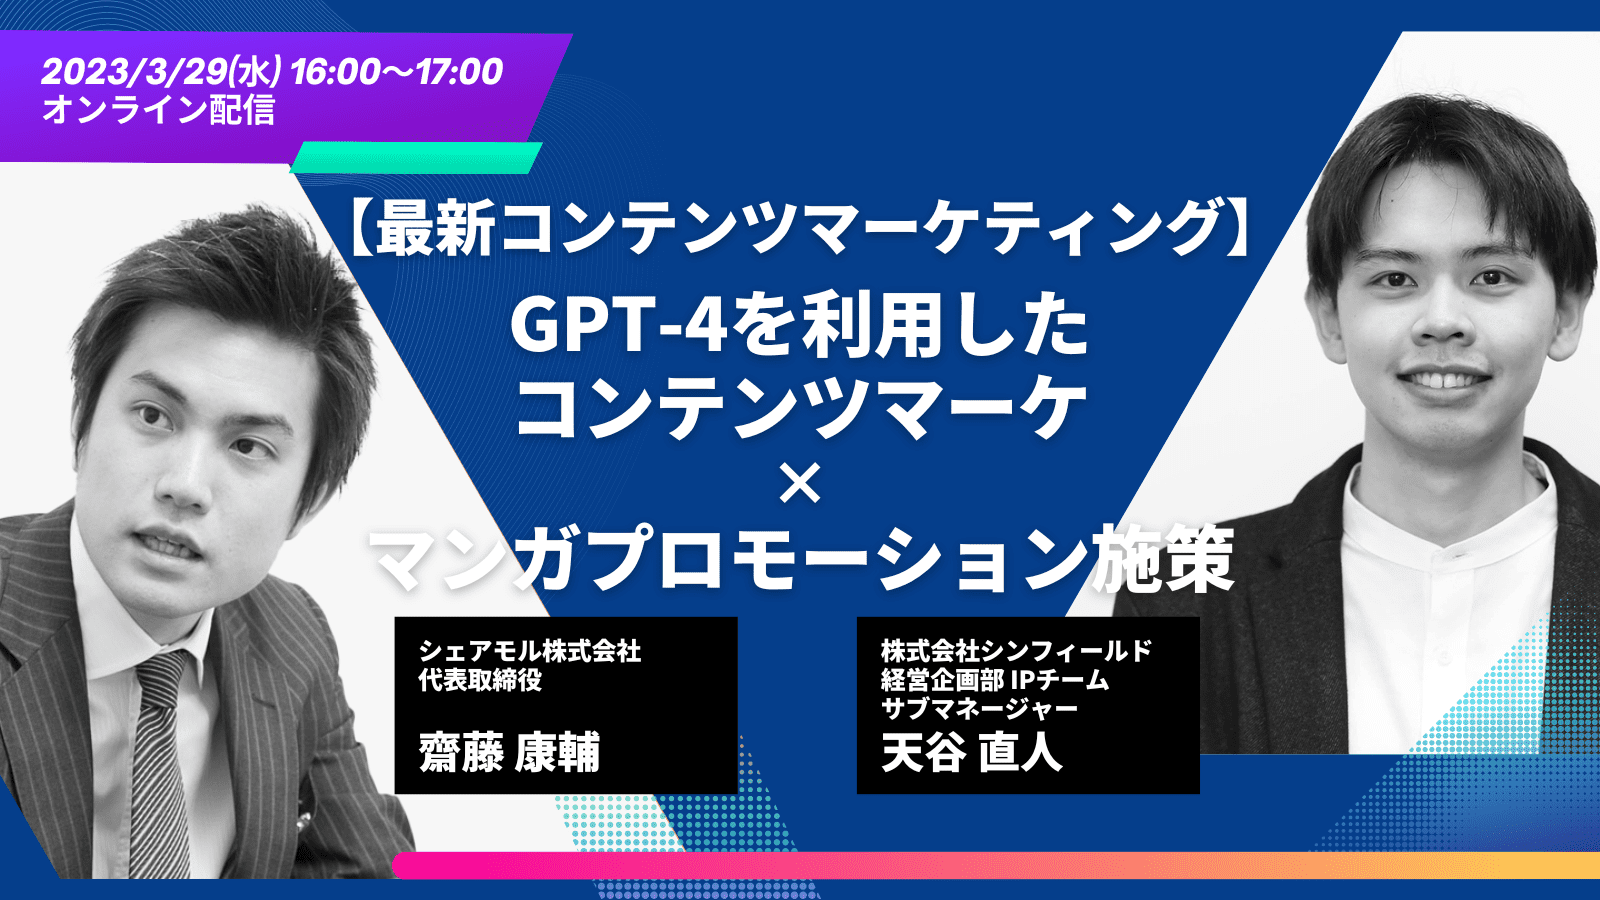 【最新のコンテンツマーケ】GPT-4を利用したコンテンツマーケ×マンガプロモーション施策